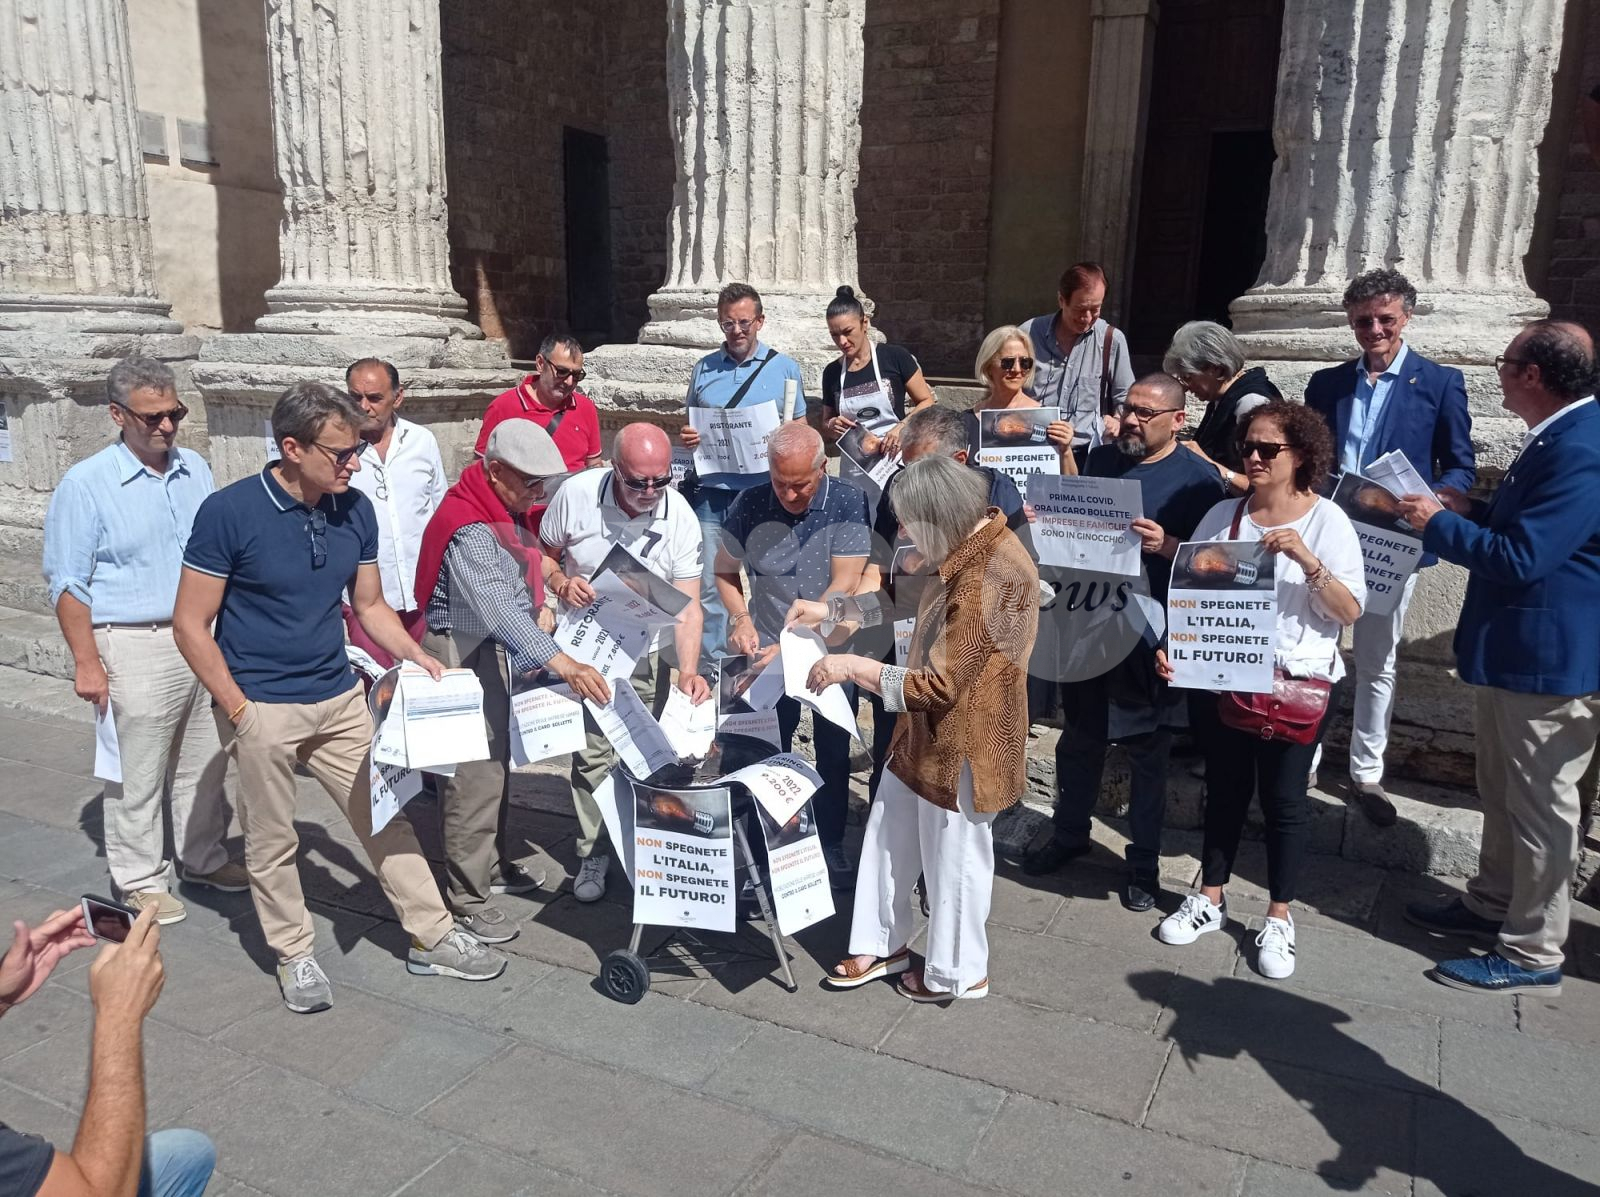 Caro bollette, anche ad Assisi e Bastia la protesta di commercianti e cittadini (foto+video)